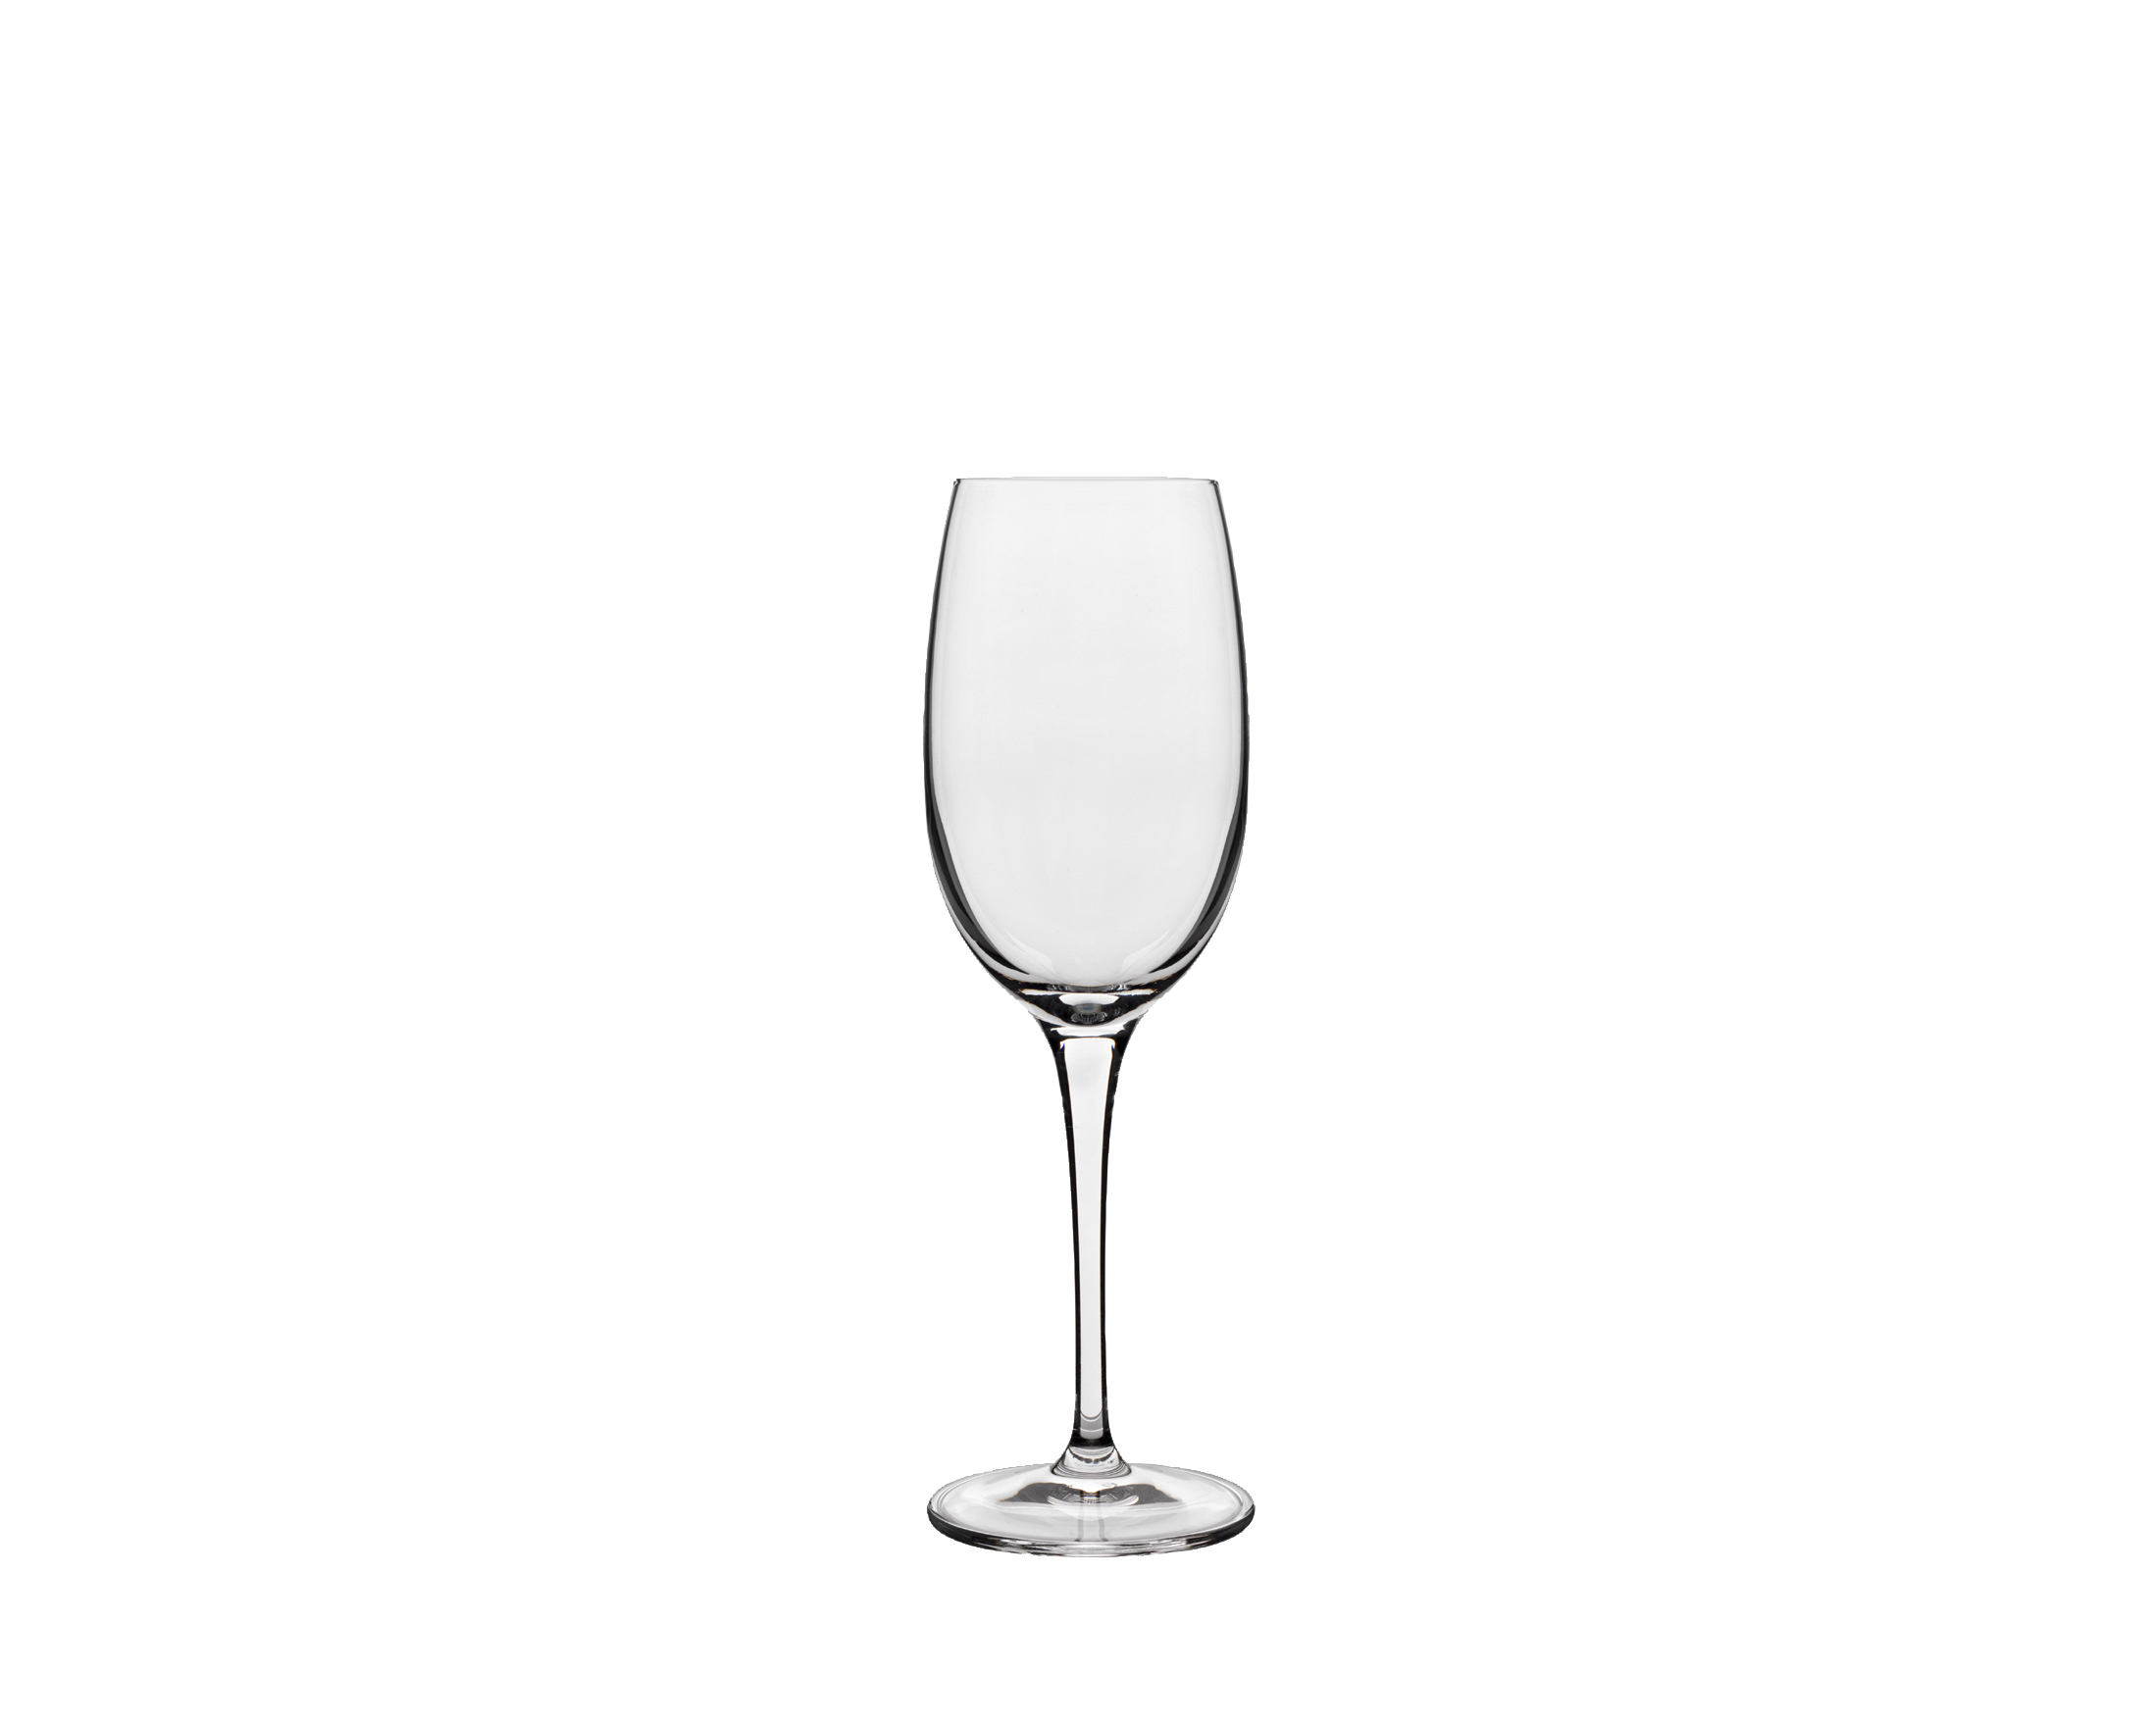 Vinoteque Portsvinsglas, 6 stk.